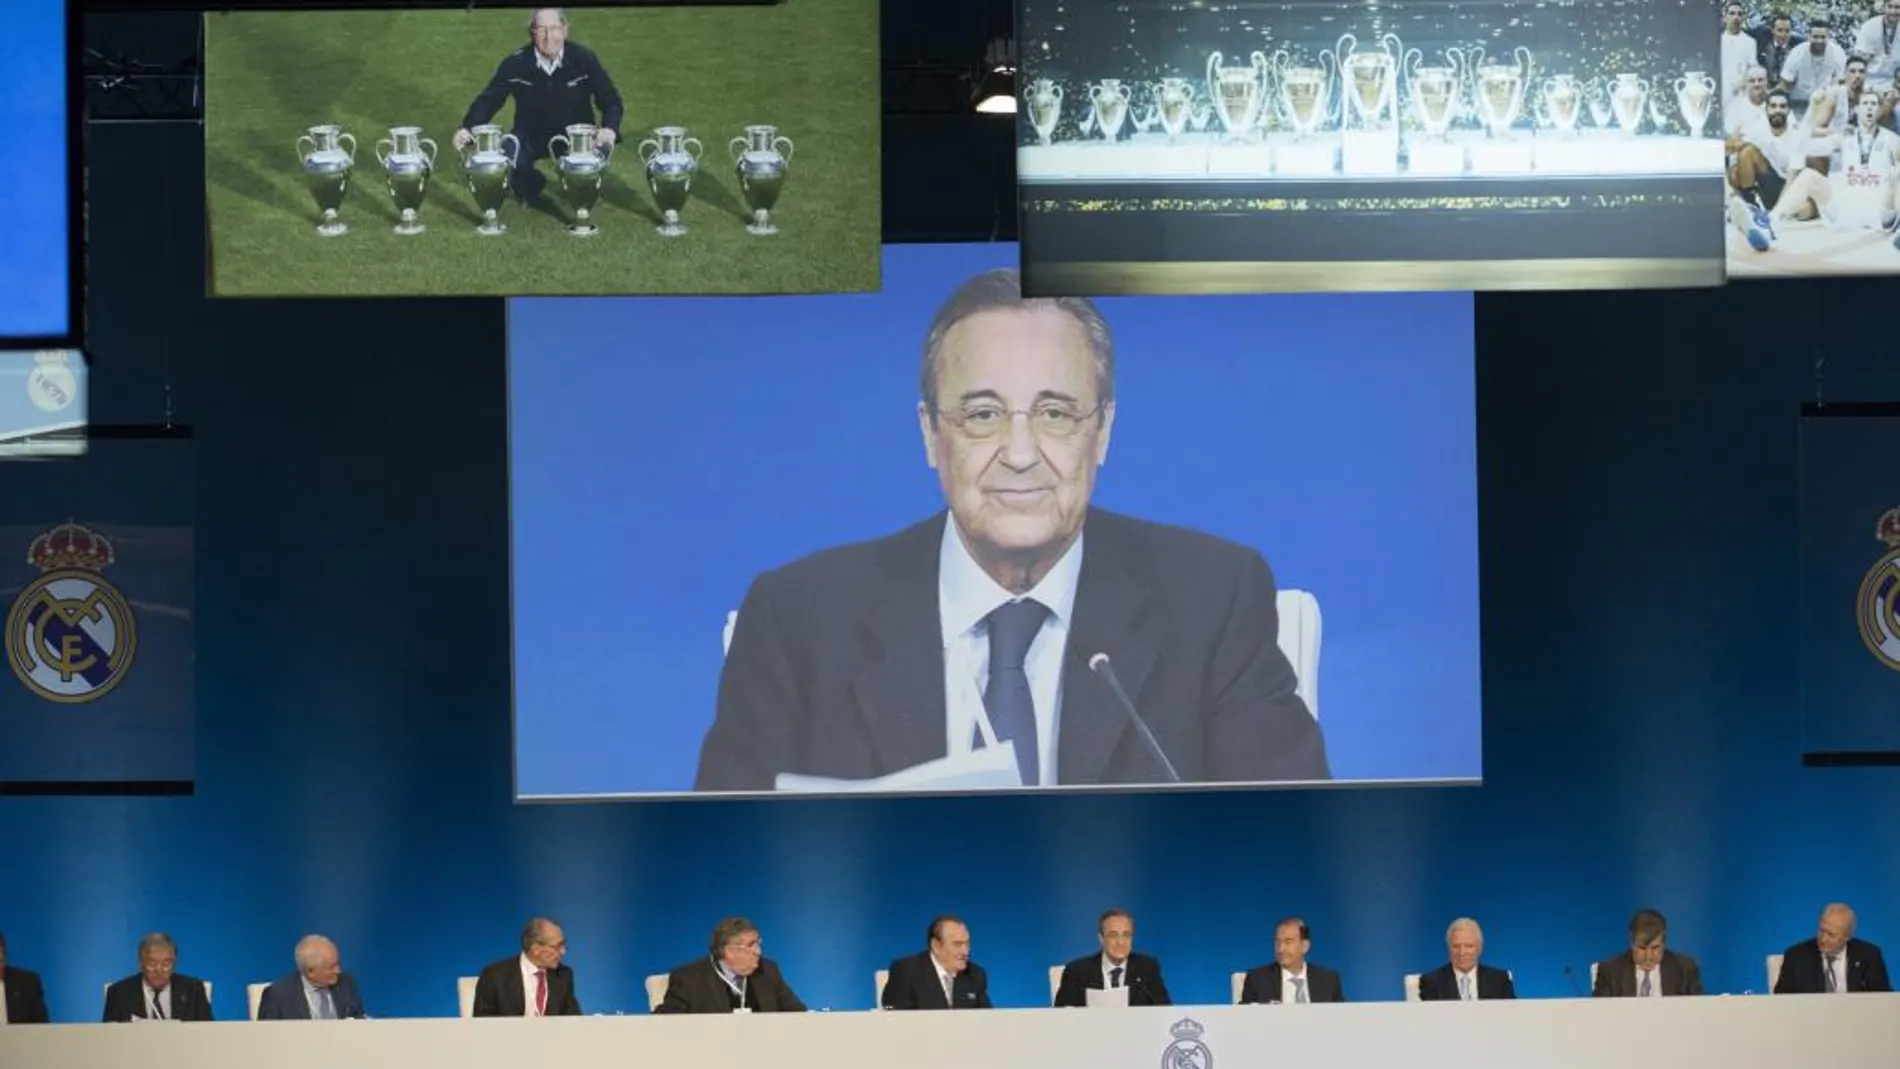 El presidente del Real Madrid, Florentino Pérez, en la pantalla principal, flanqueado por imágenes de Paco Gento y de las 11 Copas de Europa